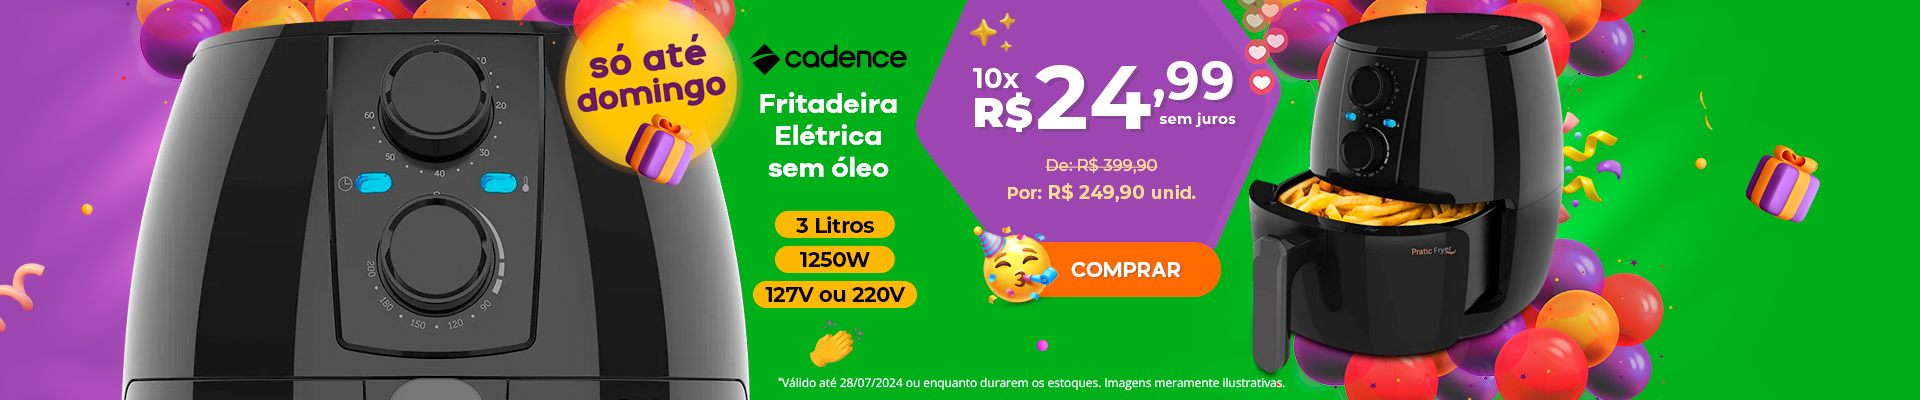 Fritadeira Cadence R$ 249,90